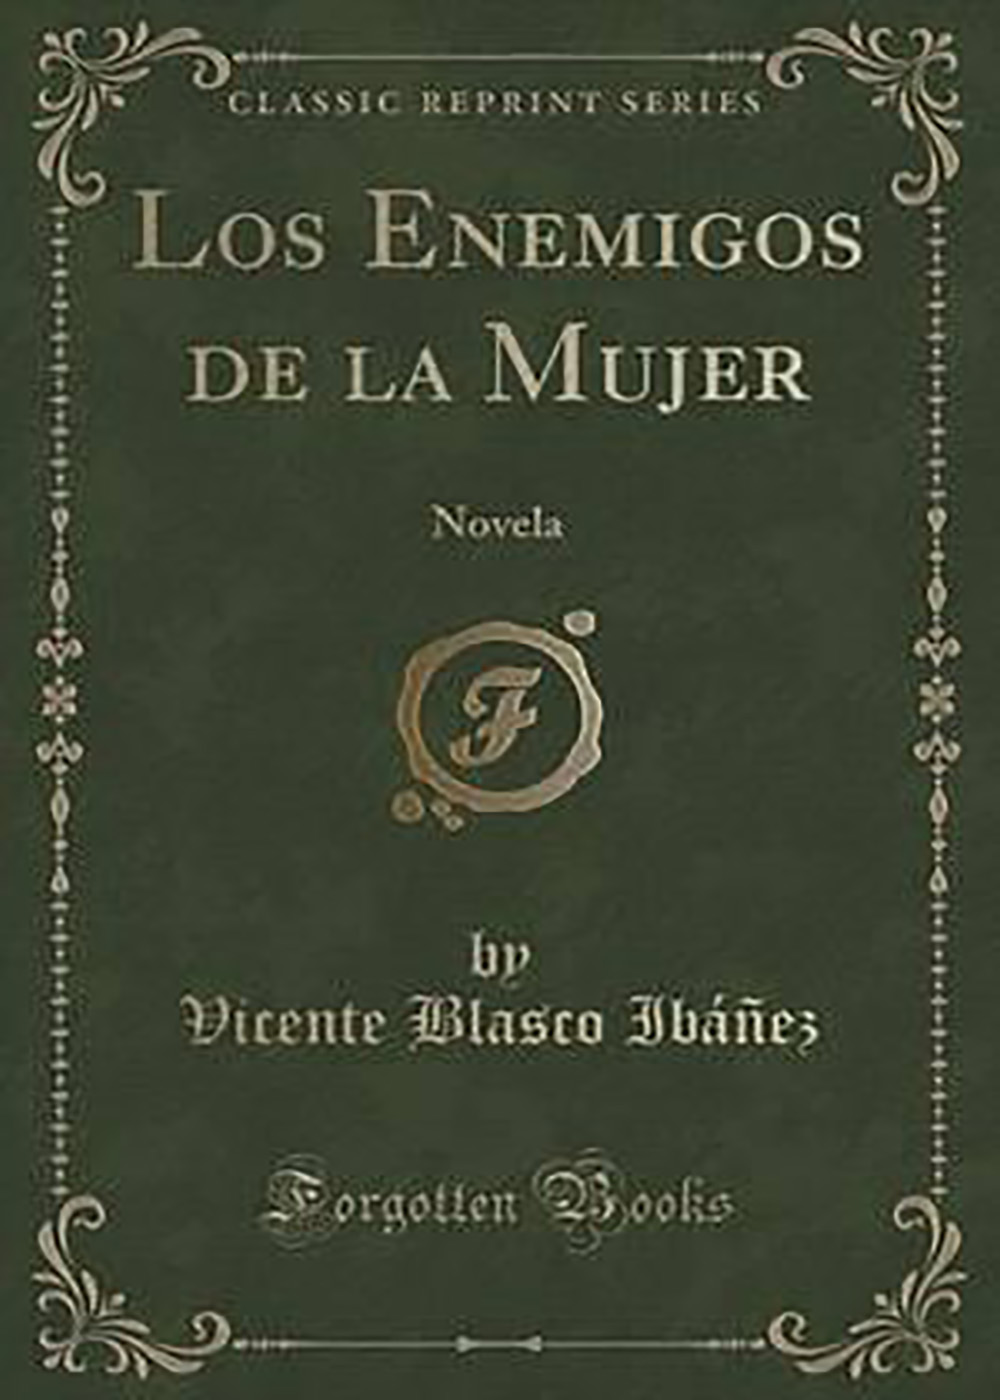 Vicente Blasco Ibáñez - Los enemigos de la mujer